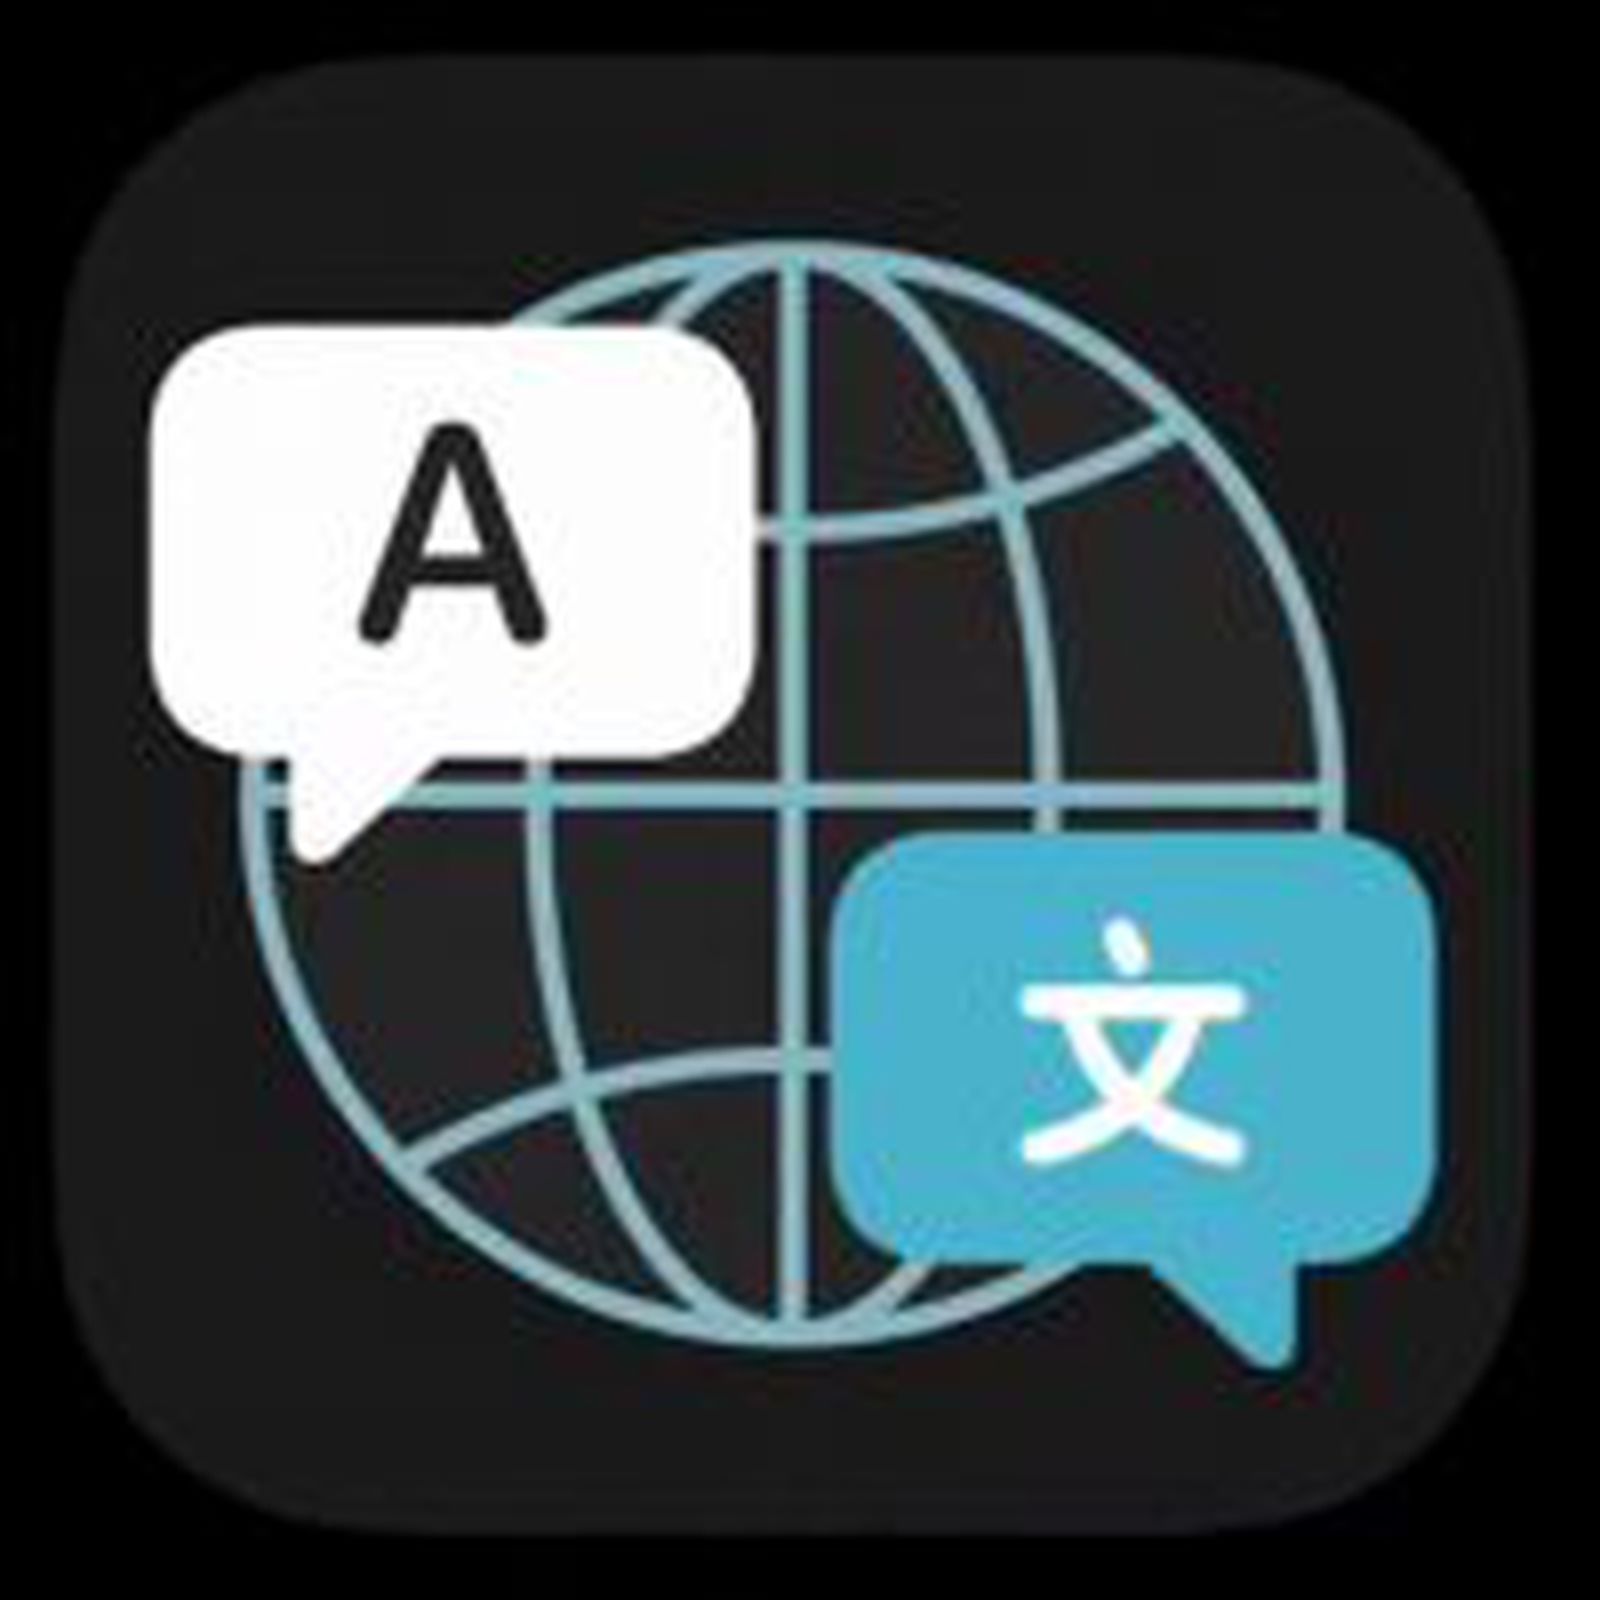 google translate app google translate app iphone